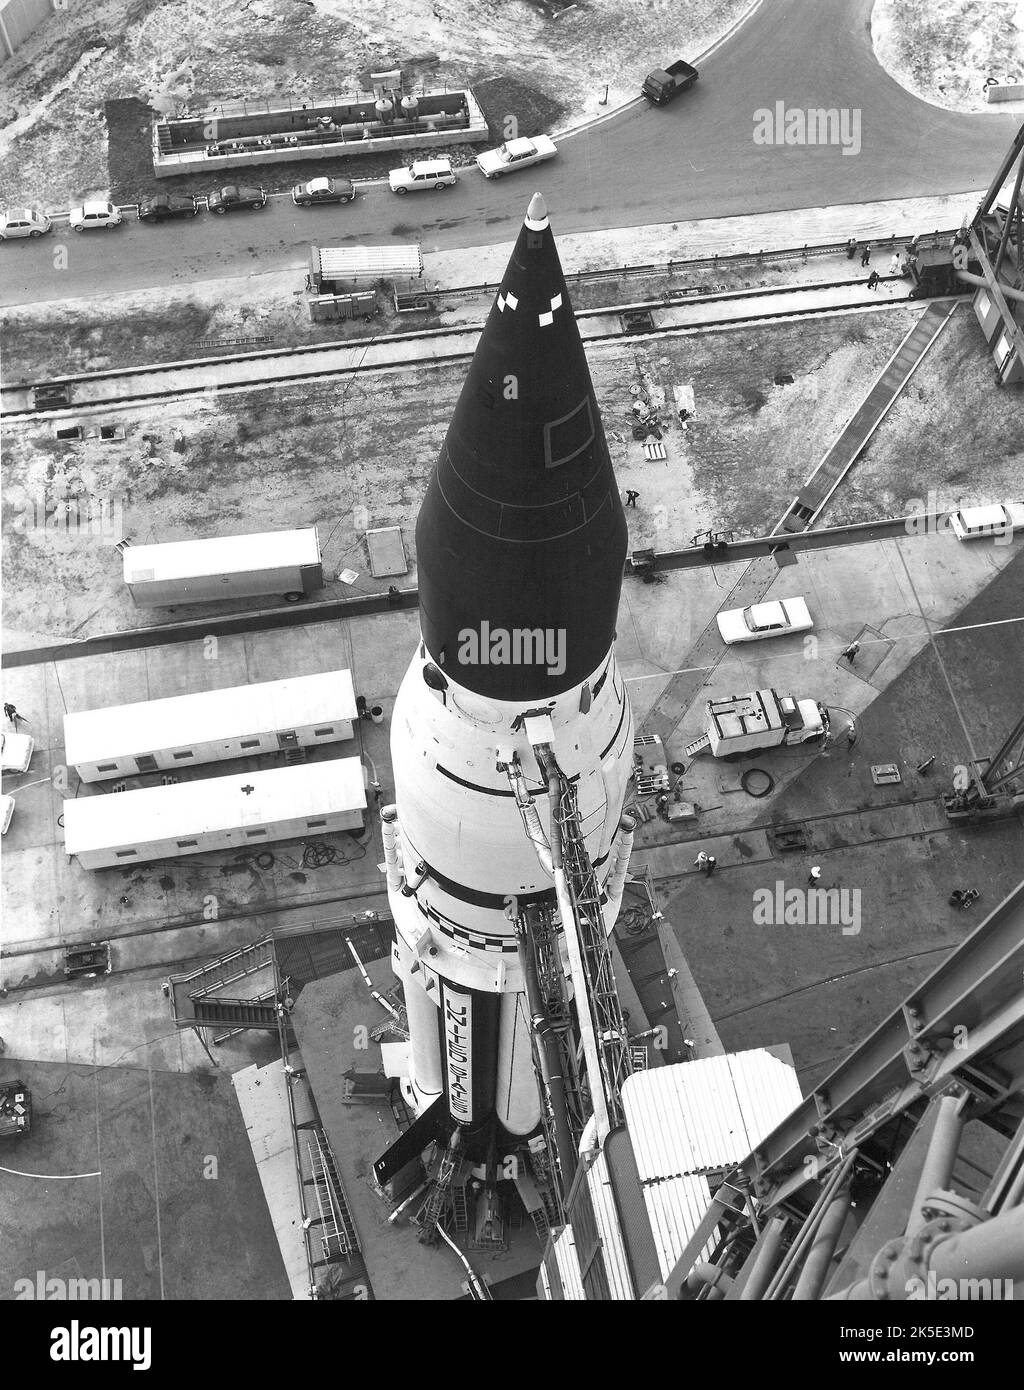 Die Apollo 6-Trägerrakete verlässt Kennedys Vehicle Assembly Building zur Startrampe 39A. Die unbemannte Mission war der letzte Qualifikationsflug des Saturn V-Trägerraketen und der Apollo-Raumsonde. Die Hauptziele der Mission waren der Nachweis der strukturellen und thermischen Integrität und Kompatibilität von Trägerrakete und Raumschiff, die Bestätigung von Startlasten und dynamischen Eigenschaften sowie die Überprüfung von Phasentrennungen, Antrieb, Führung und Steuerung, elektrischen Systemen, Noterkennungssystemen, Und Missionsunterstützungseinrichtungen und -Operationen. April 1968 NASA-Bild / Quelle: NASA Stockfoto